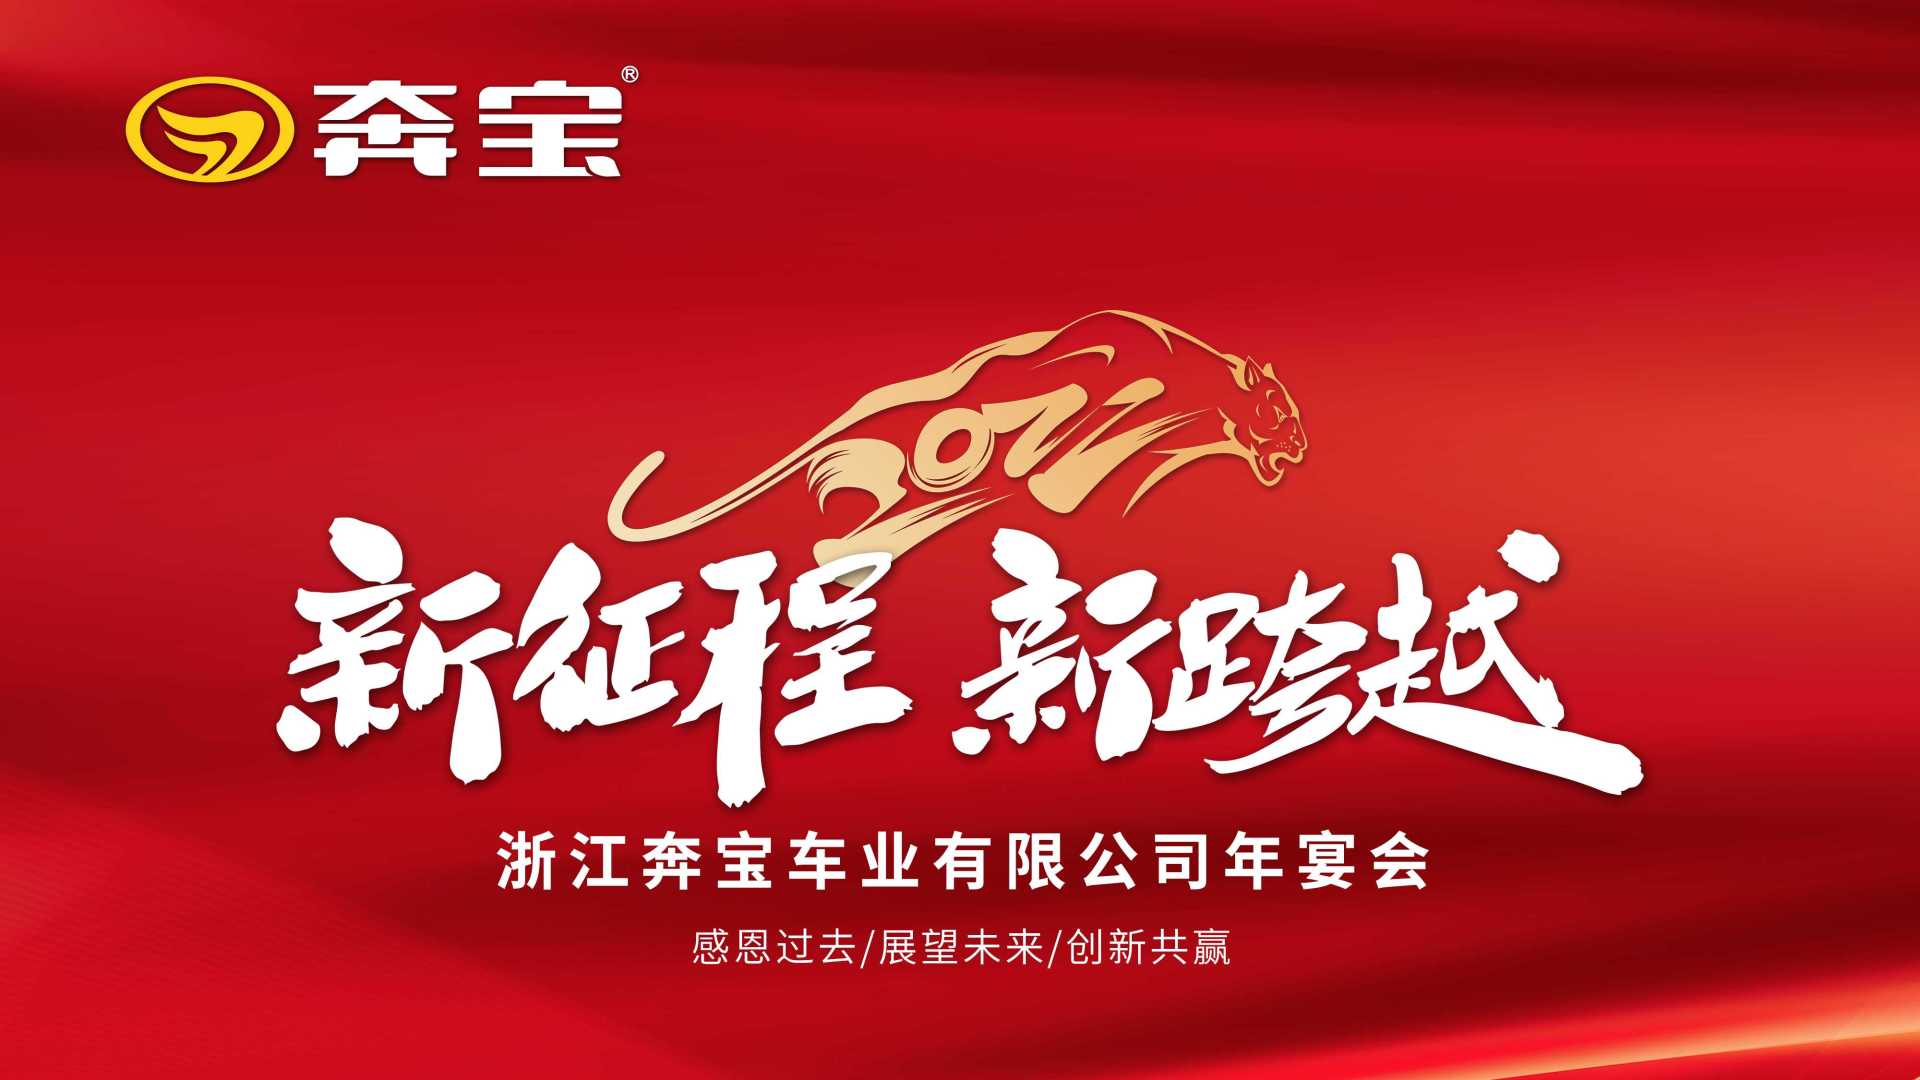 浙江奔宝电动车•管理团队企业文化展示•2022公司年宴会